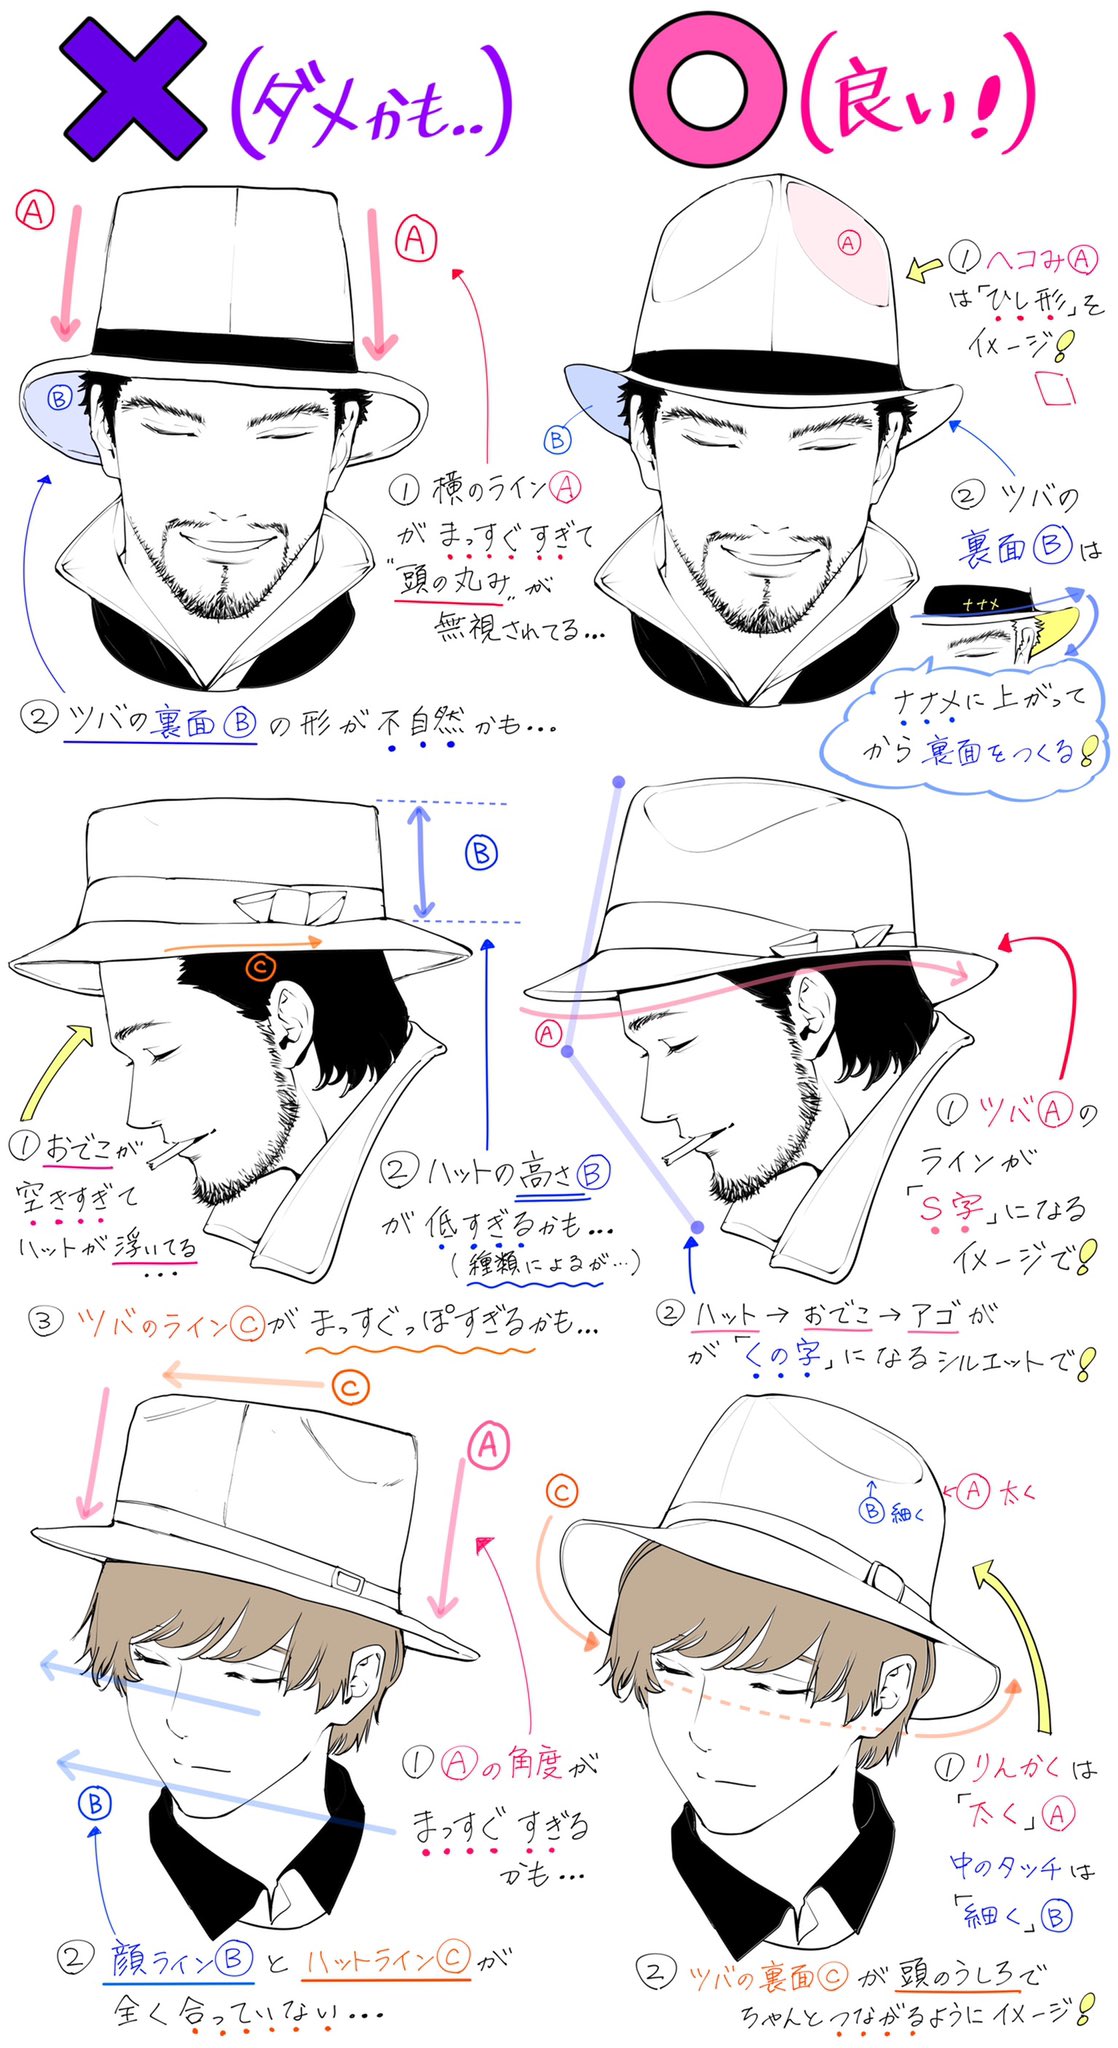 吉村拓也 イラスト講座 ハット帽の描き方 おしゃれなハット帽子が上達する ダメなこと と 良いこと T Co Fh6gmfzk4v Twitter